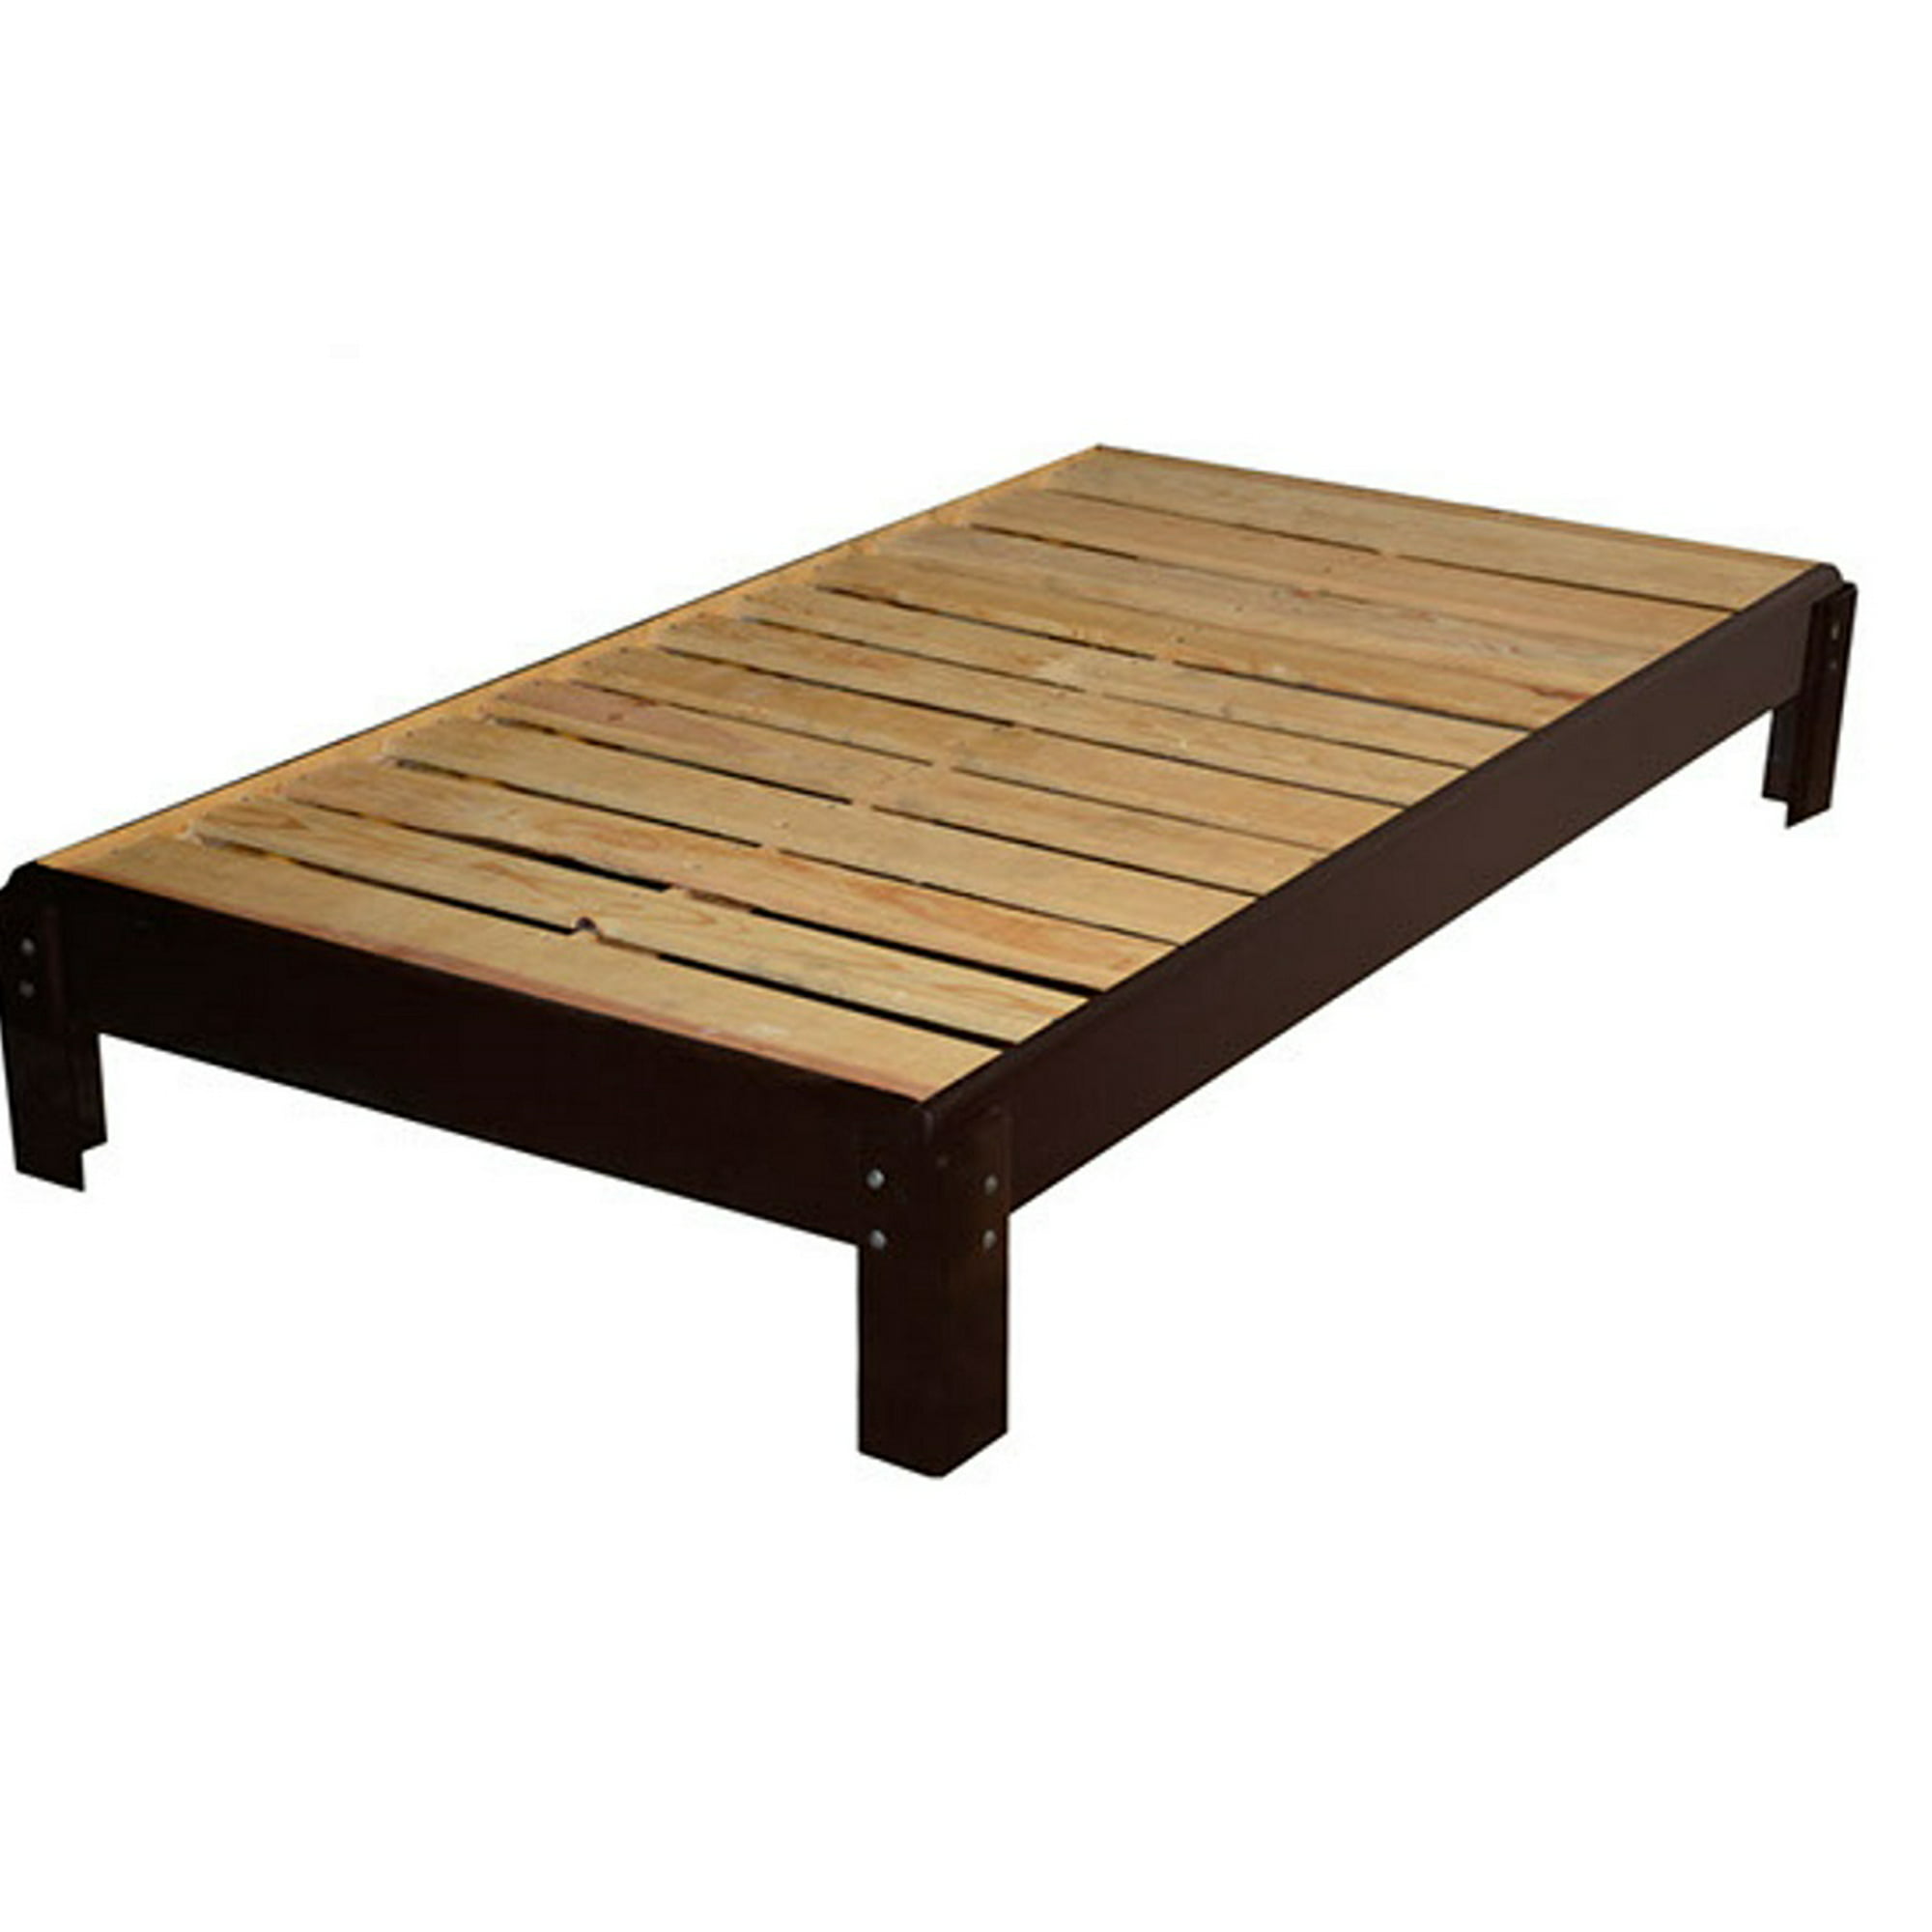 Base cama madera al mejor precio - Página 5